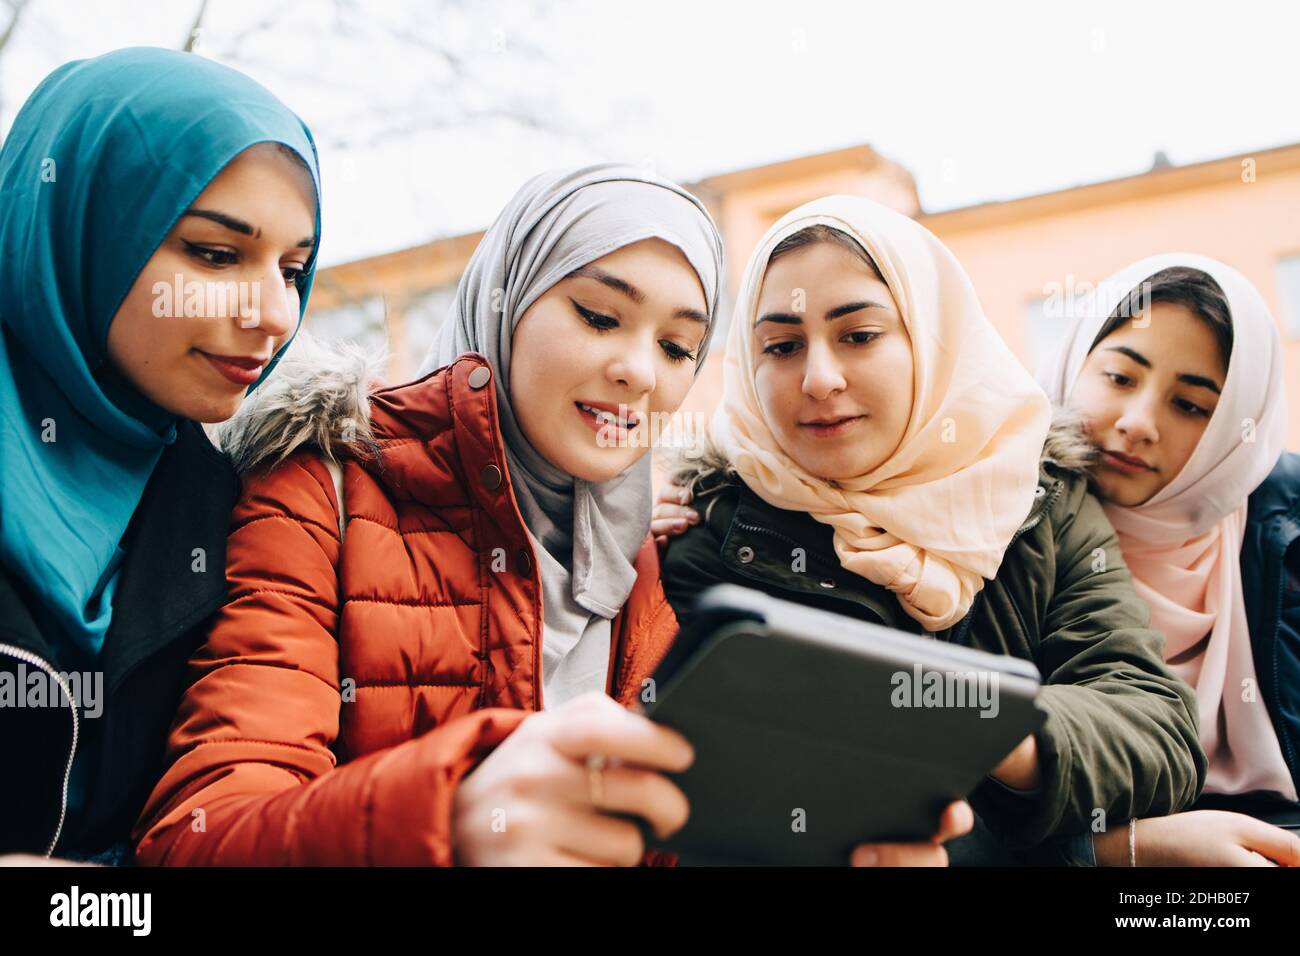 Vue sous angle d'amis musulmans multiethniques partageant une tablette numérique Banque D'Images